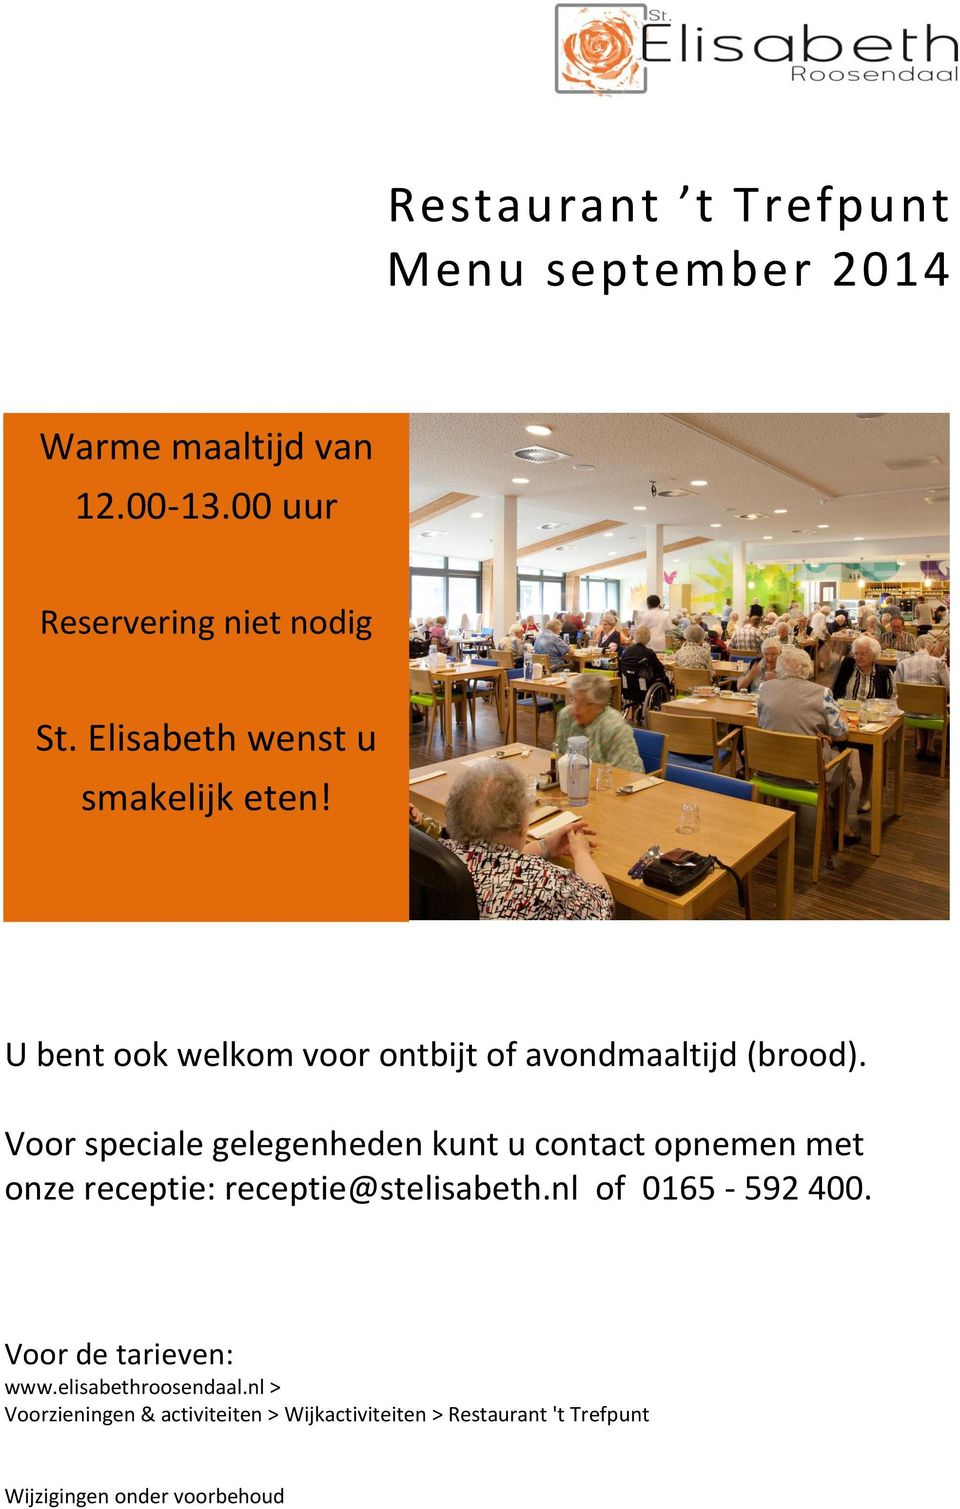 Voor speciale gelegenheden kunt u contact opnemen met onze receptie: receptie@stelisabeth.nl of 0165-592 400.